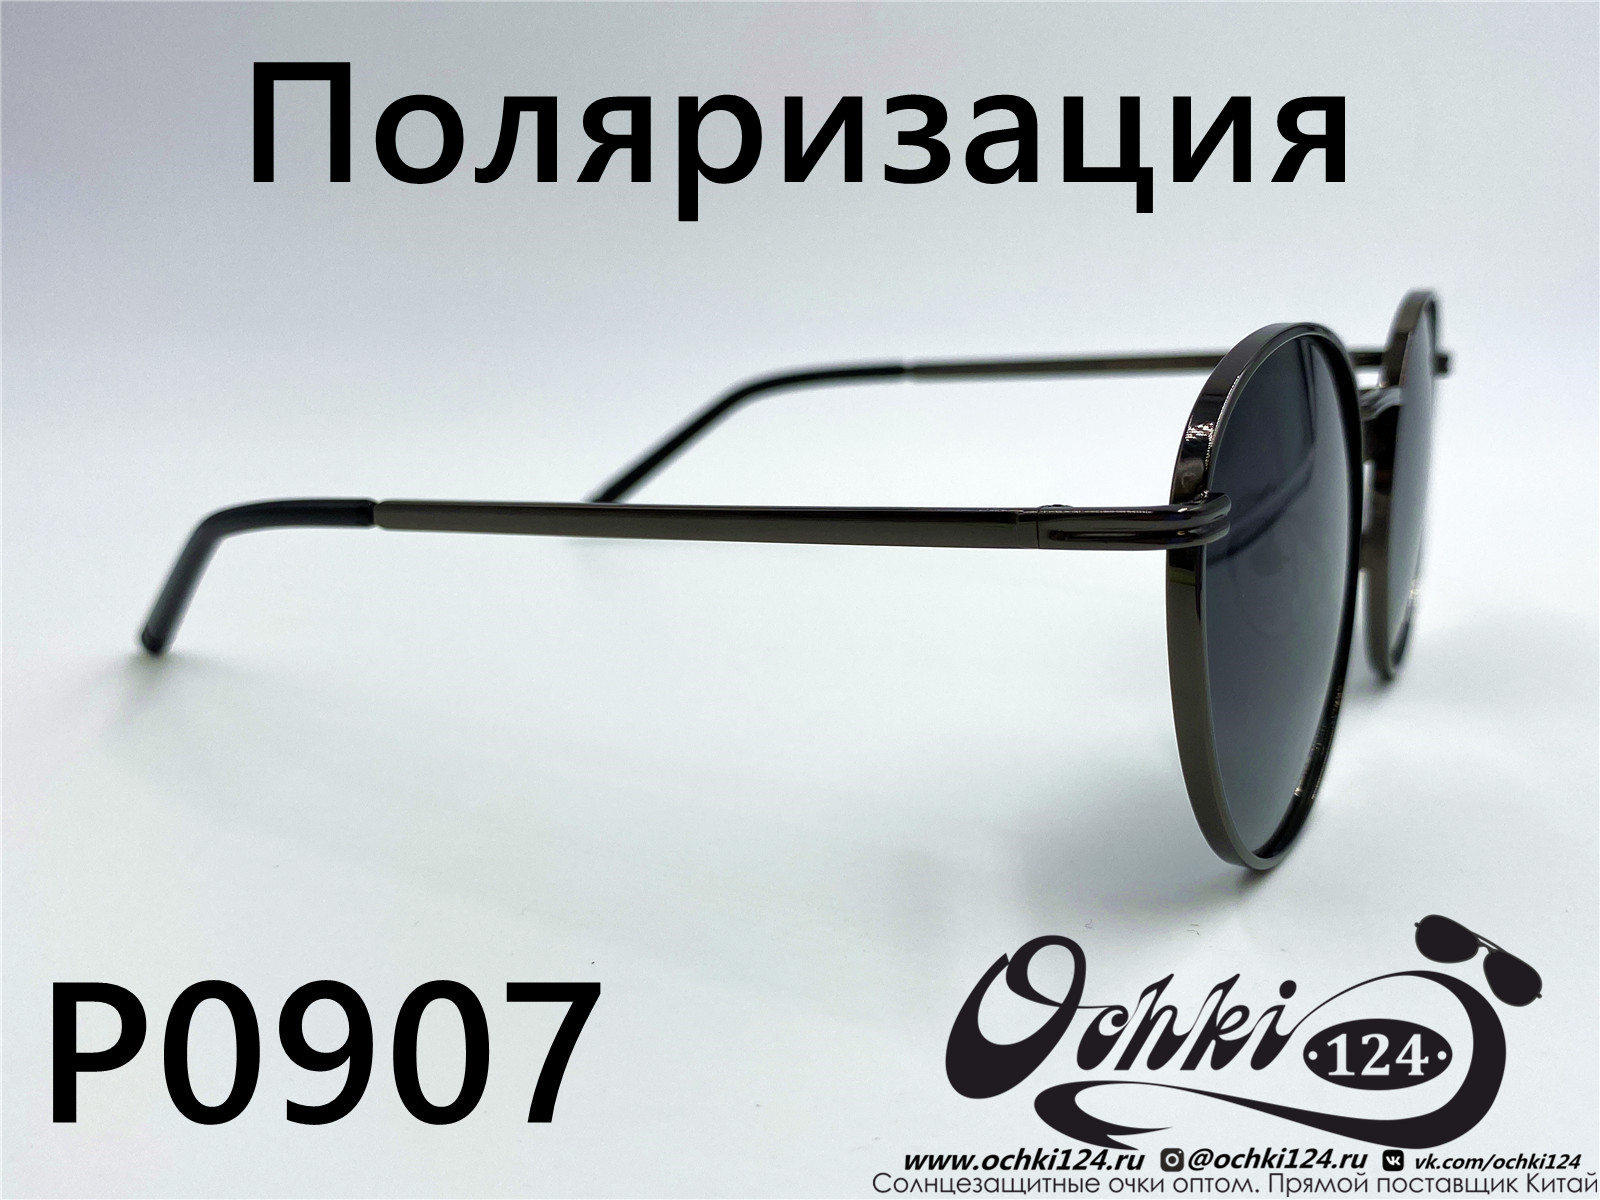  Солнцезащитные очки картинка 2022 Женские Поляризованные Круглые  P0907-4 